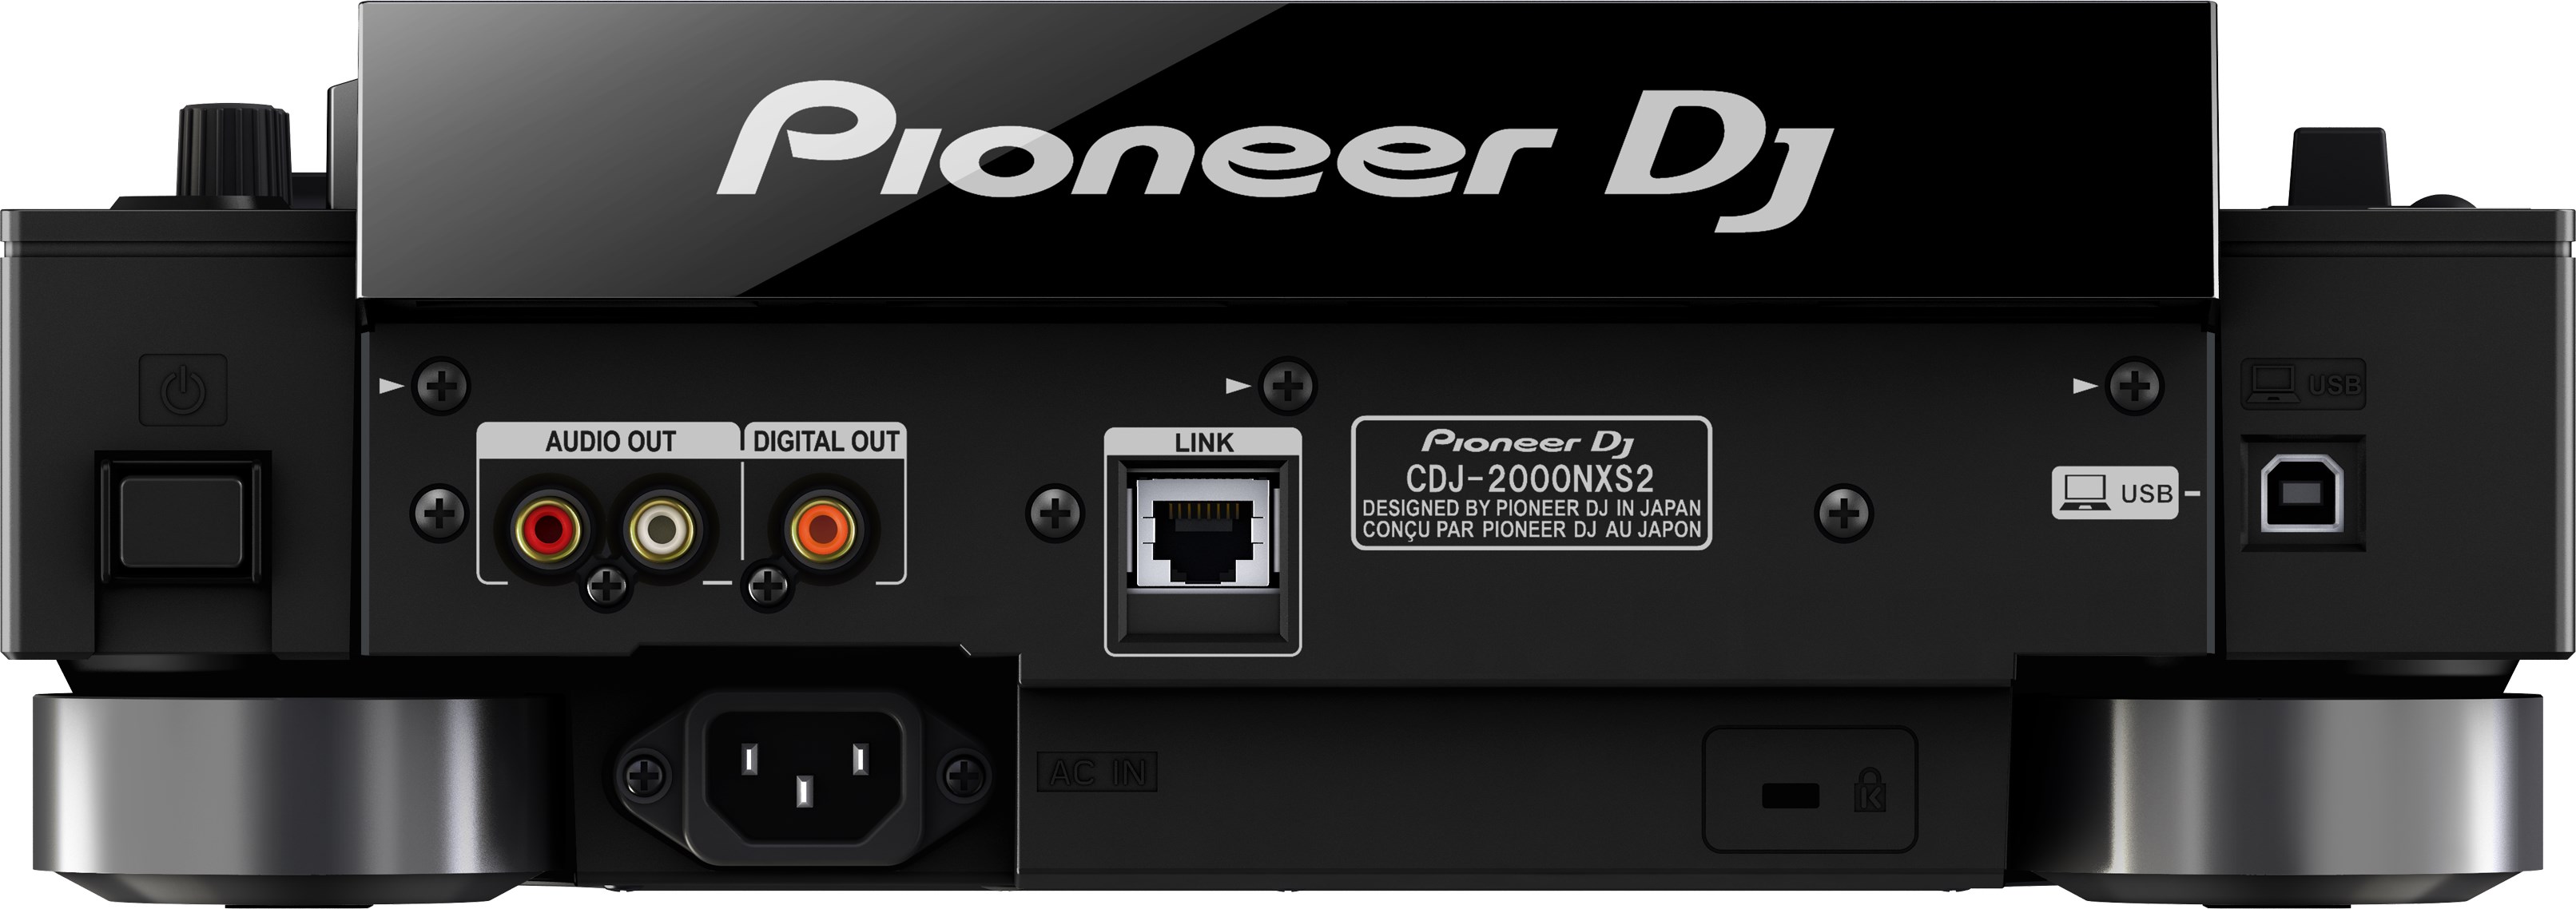 Pioneer Dj Cdj-2000nxs2 - MP3 & CD Plattenspieler - Variation 2